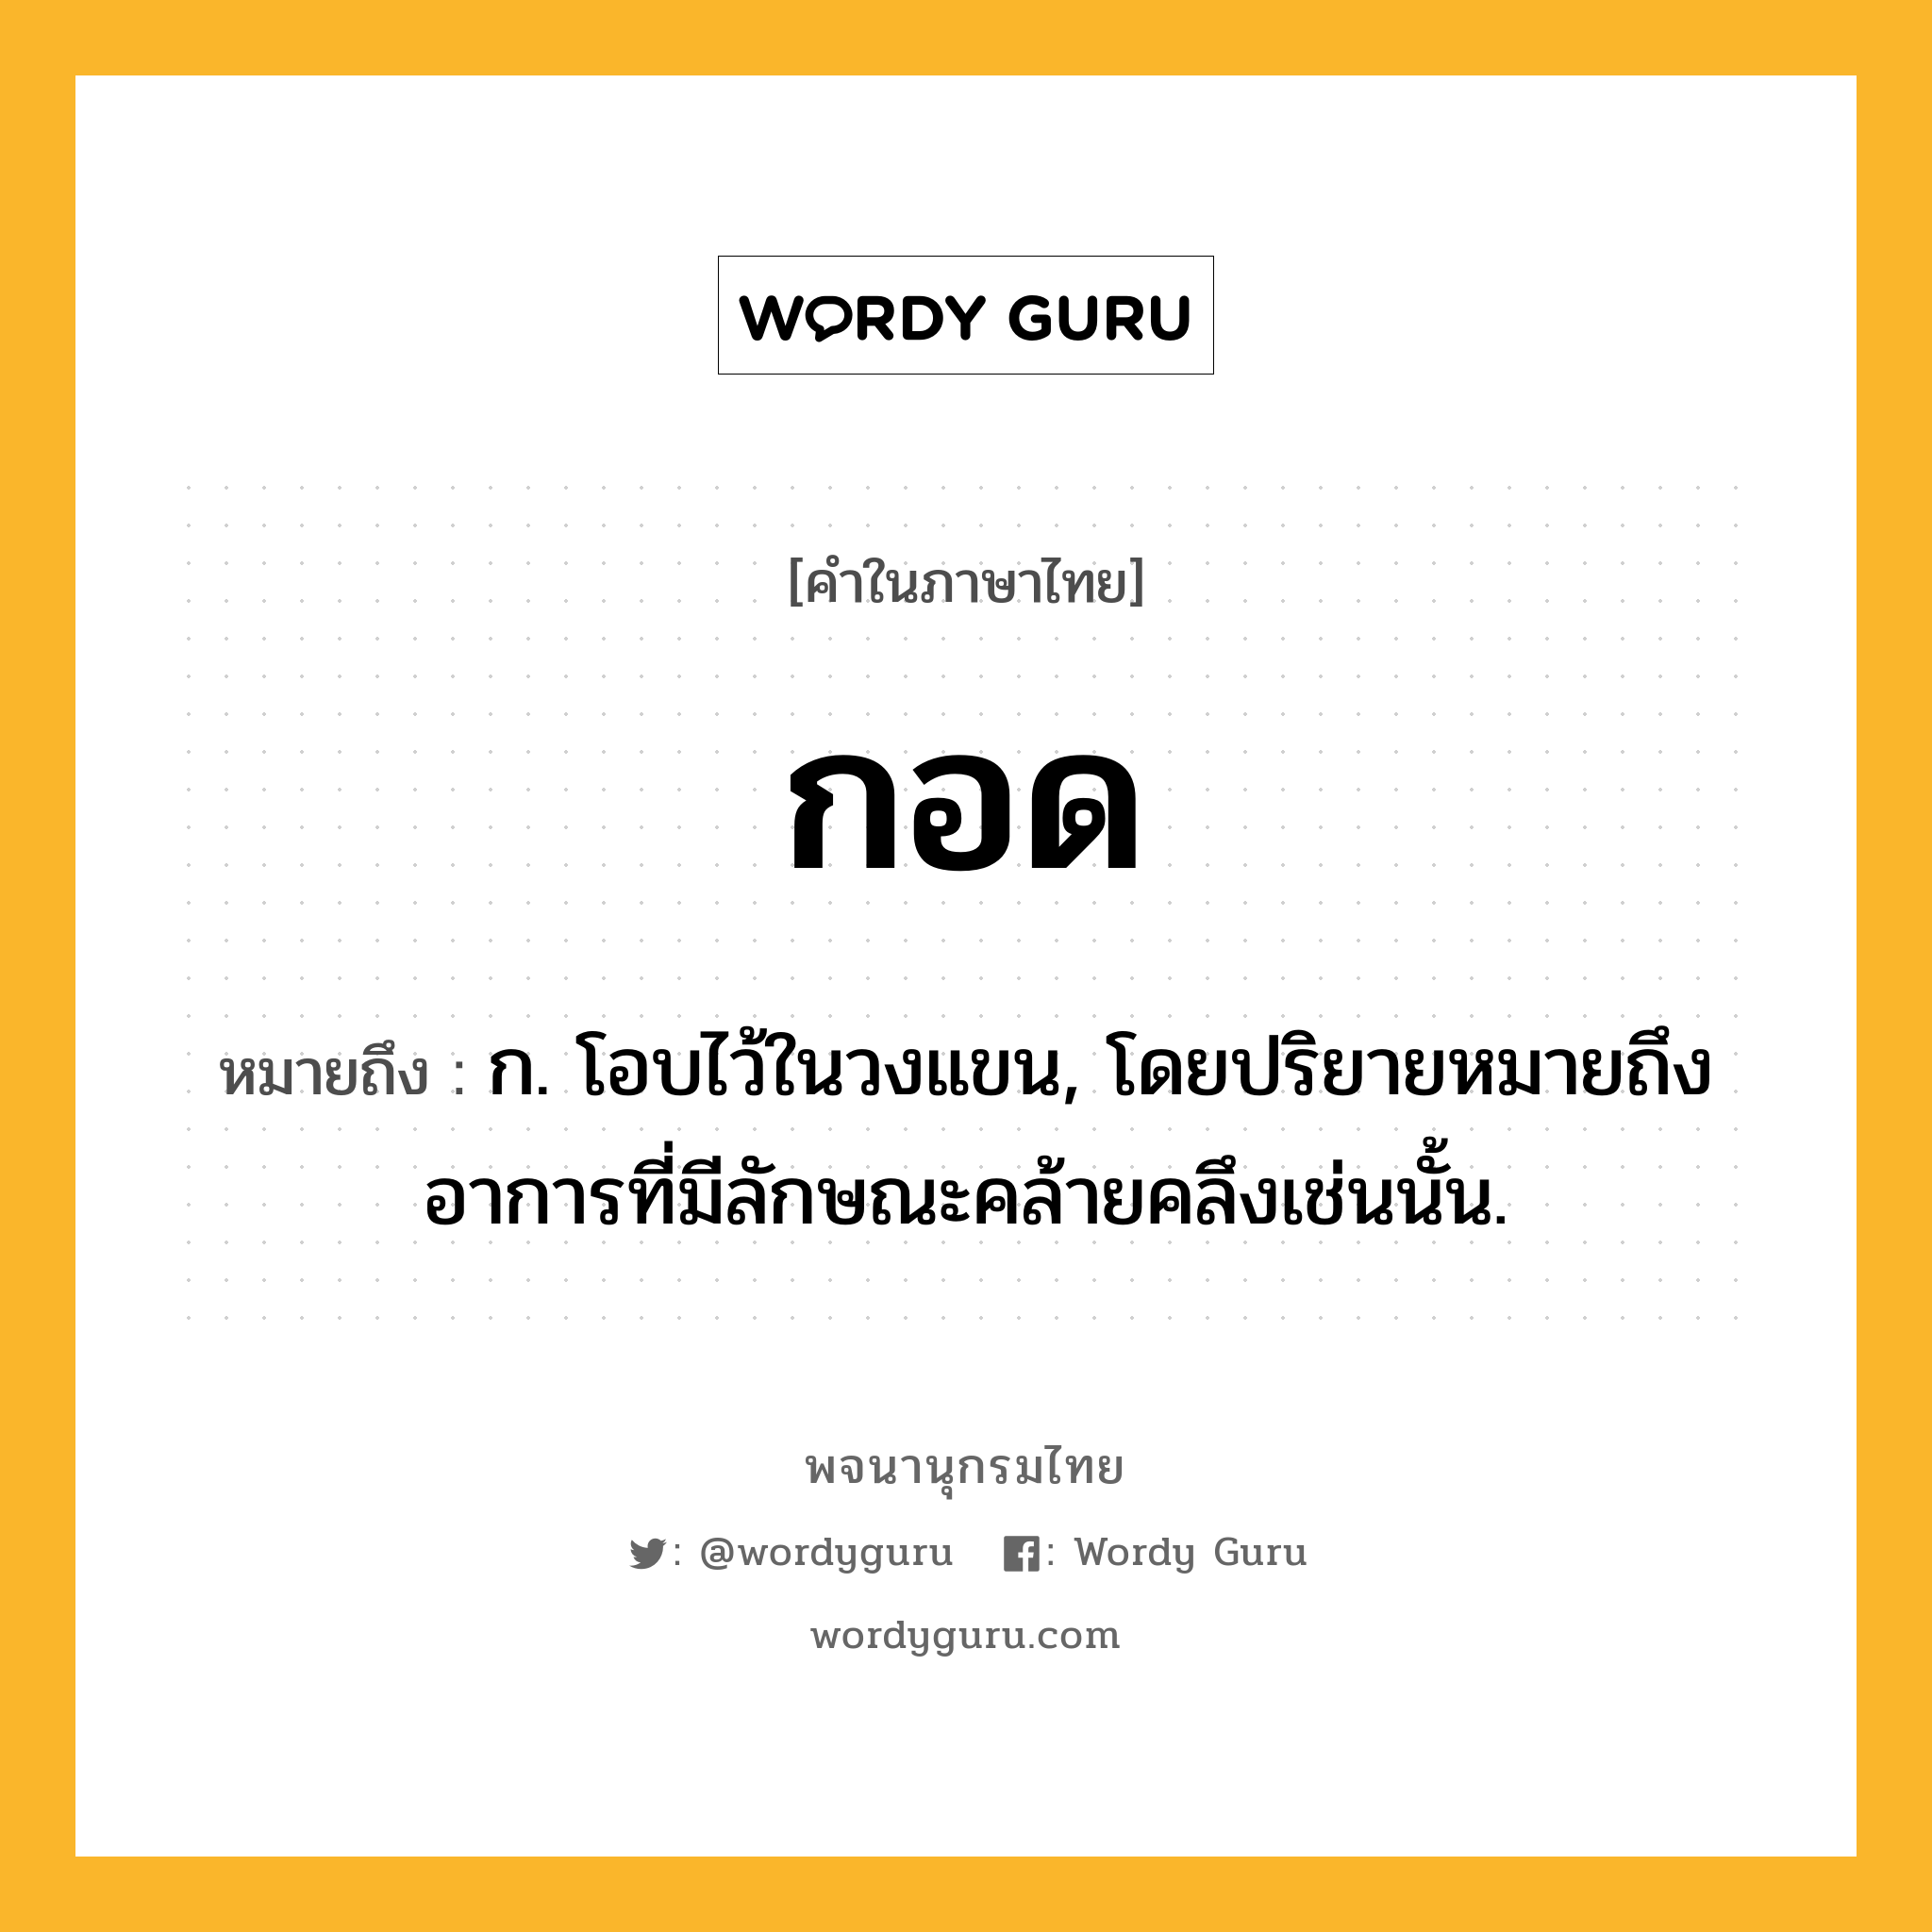 กอด หมายถึงอะไร?, คำในภาษาไทย กอด หมายถึง ก. โอบไว้ในวงแขน, โดยปริยายหมายถึงอาการที่มีลักษณะคล้ายคลึงเช่นนั้น.